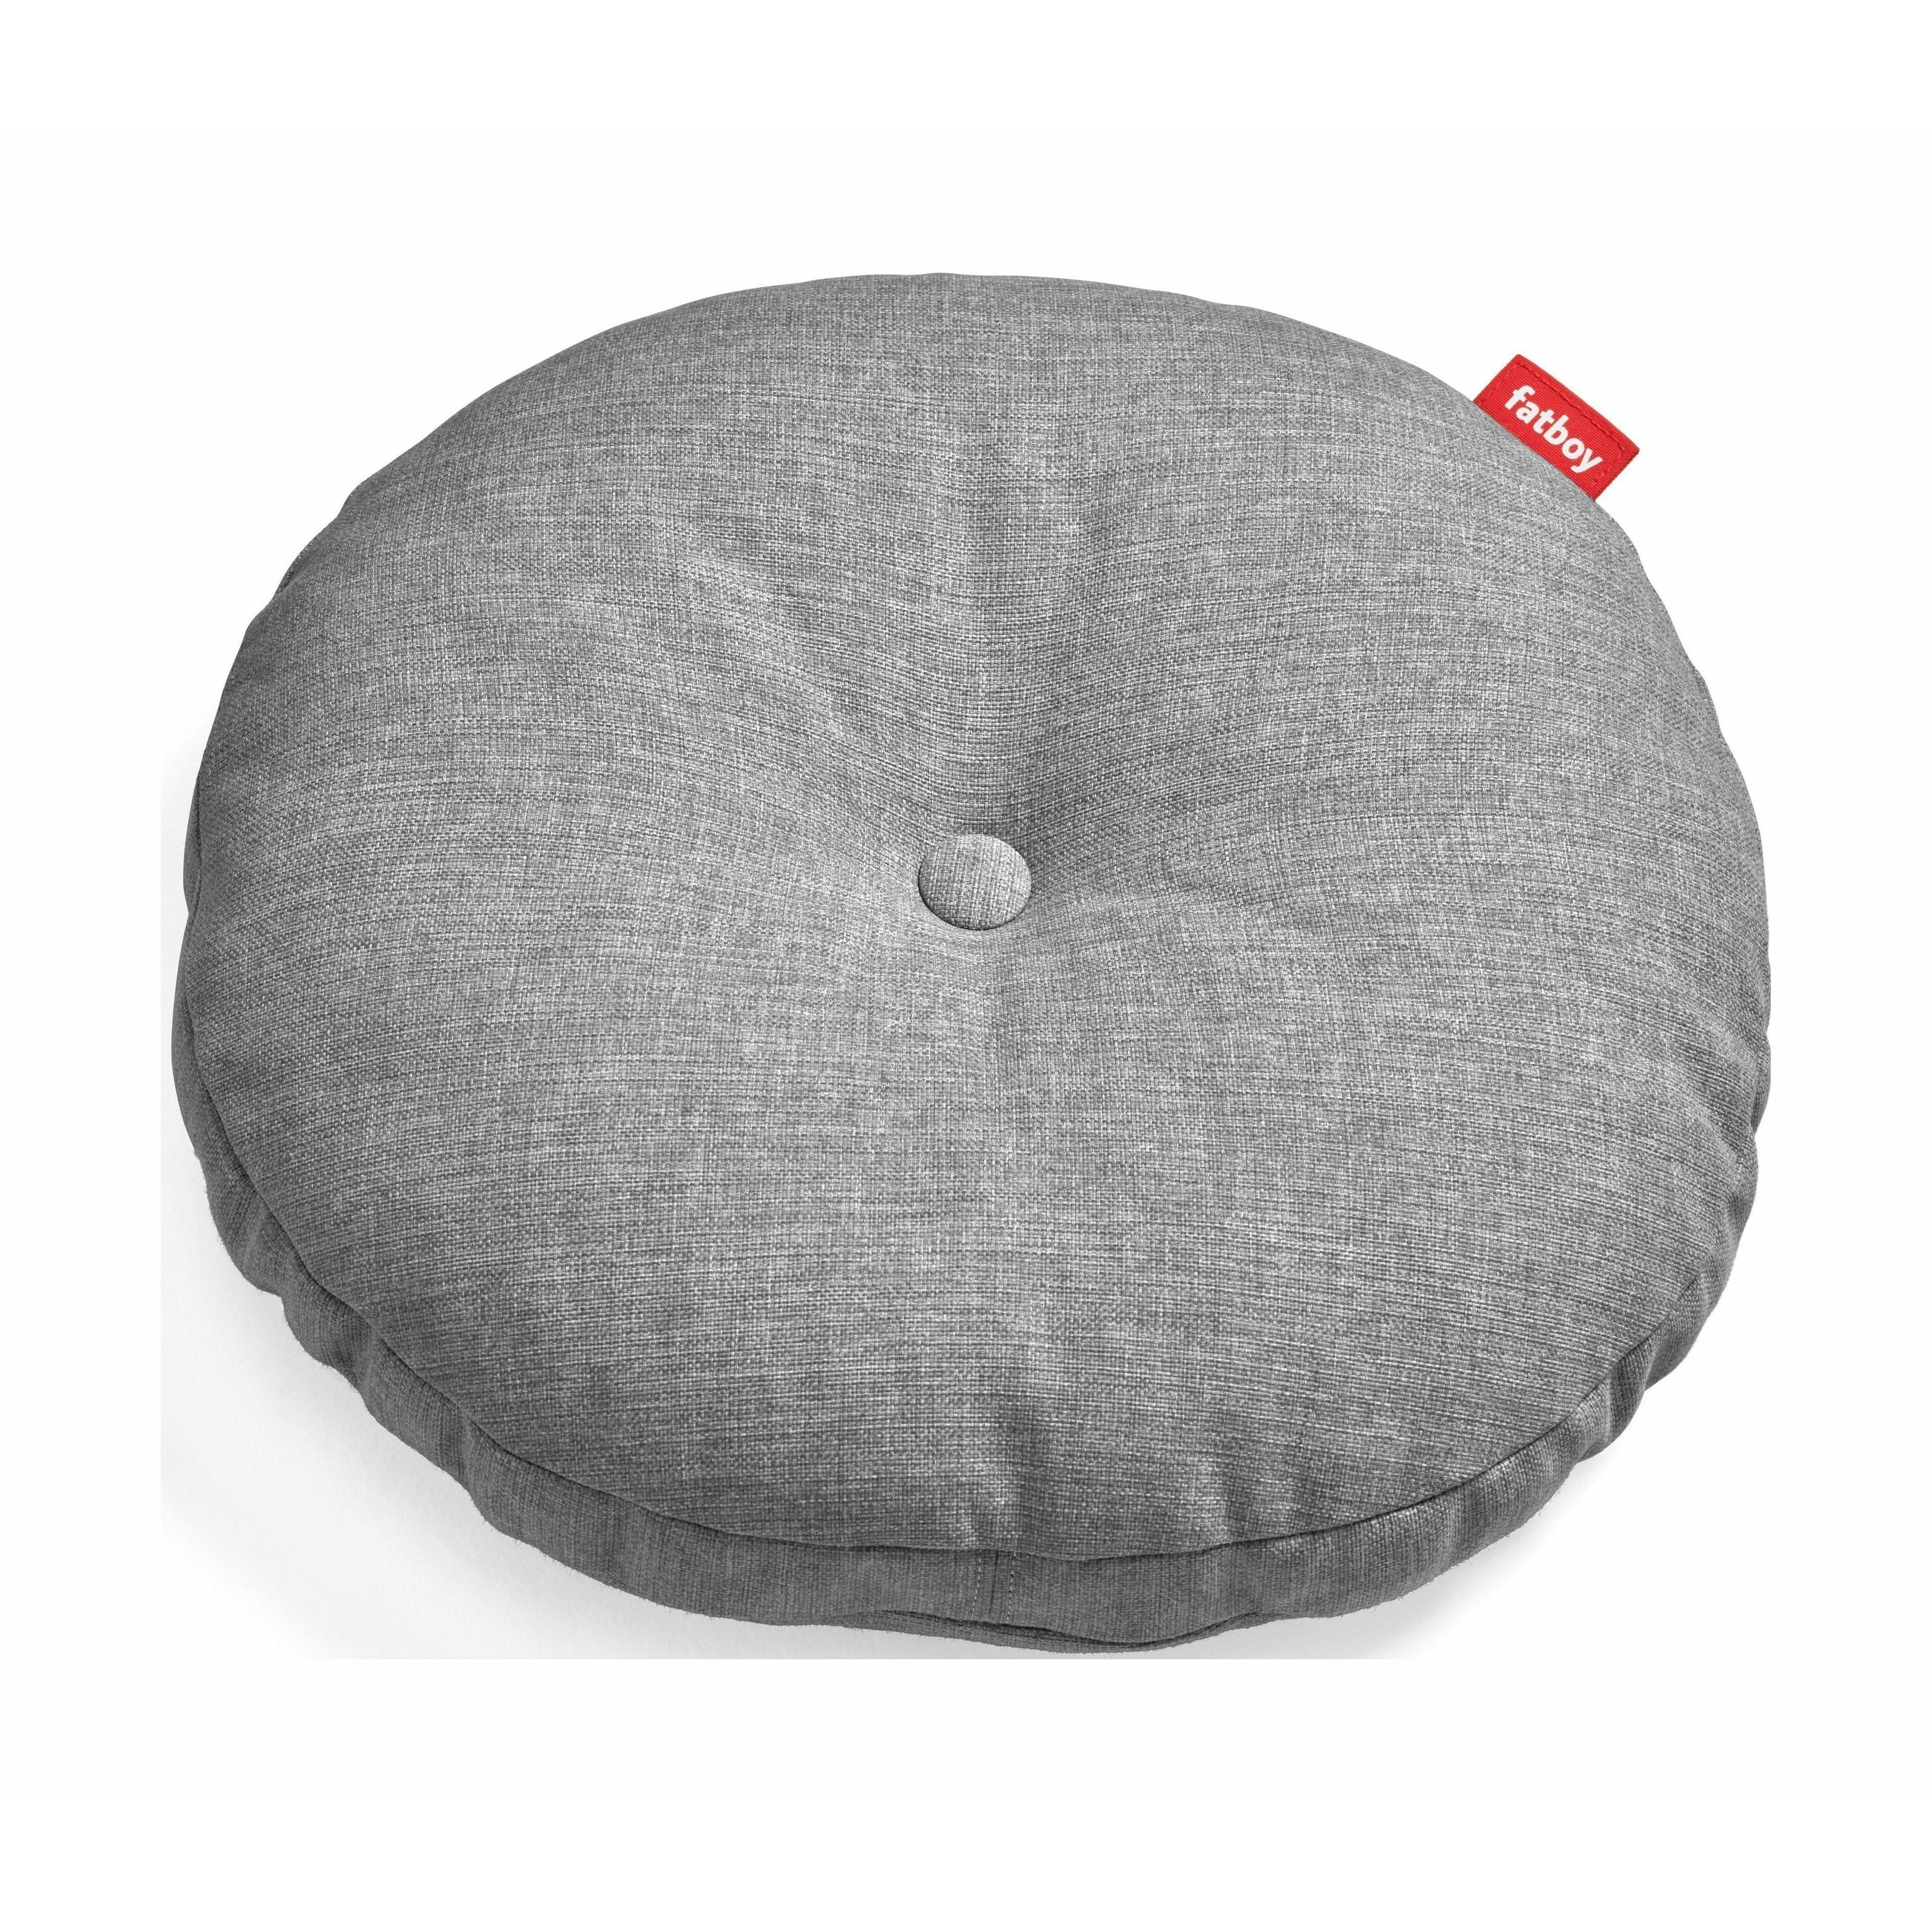 Fatboy Circle Pillow Outdoor Round Garden Cushion, Stone Grey